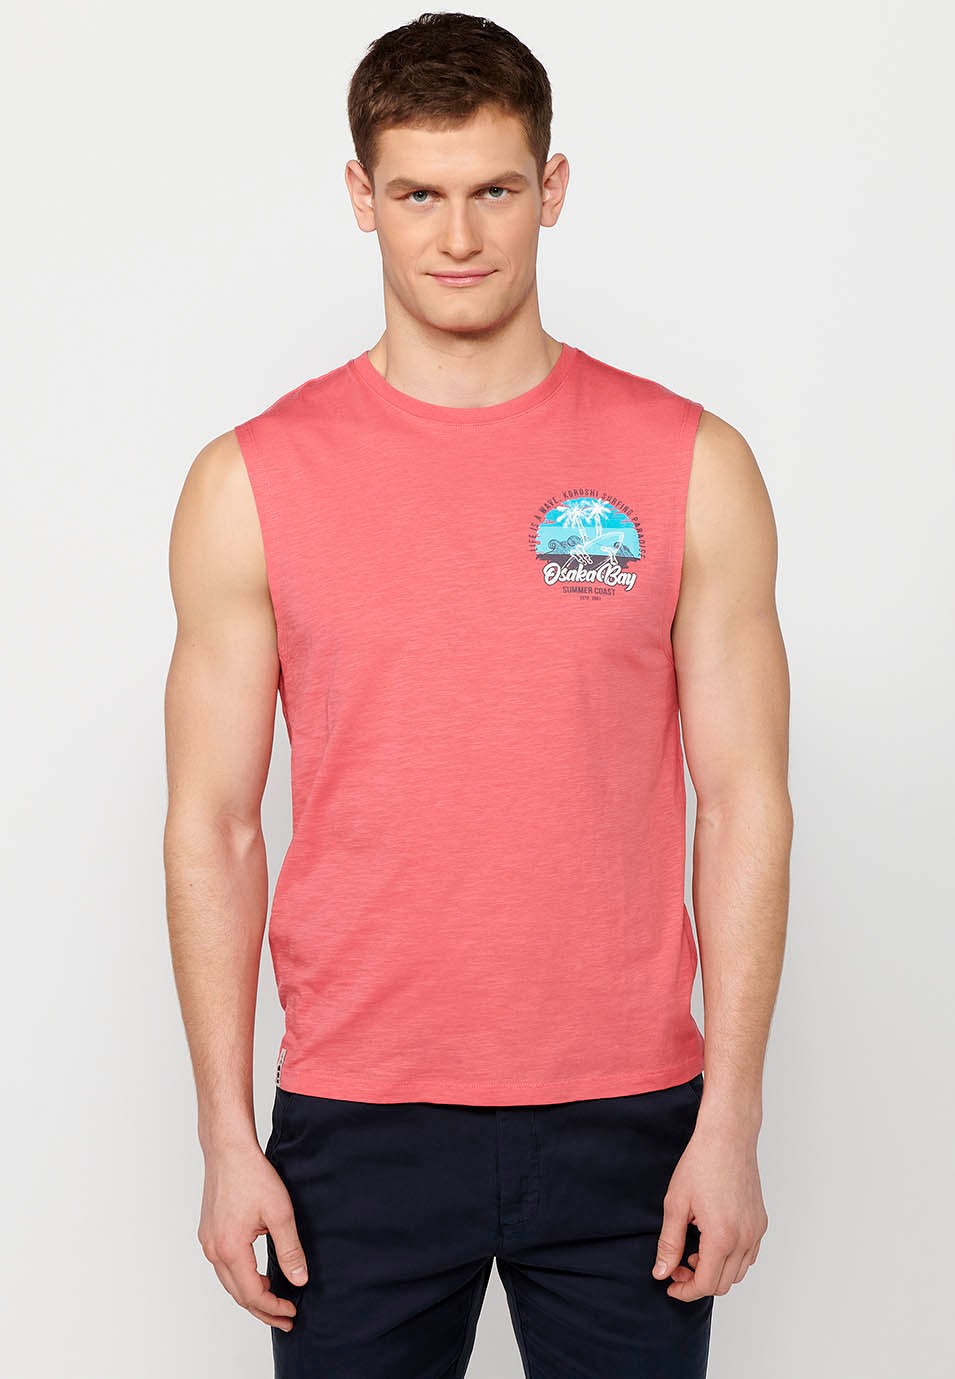 Camiseta de tirantes, sin mangas, estampada color coral para hombres